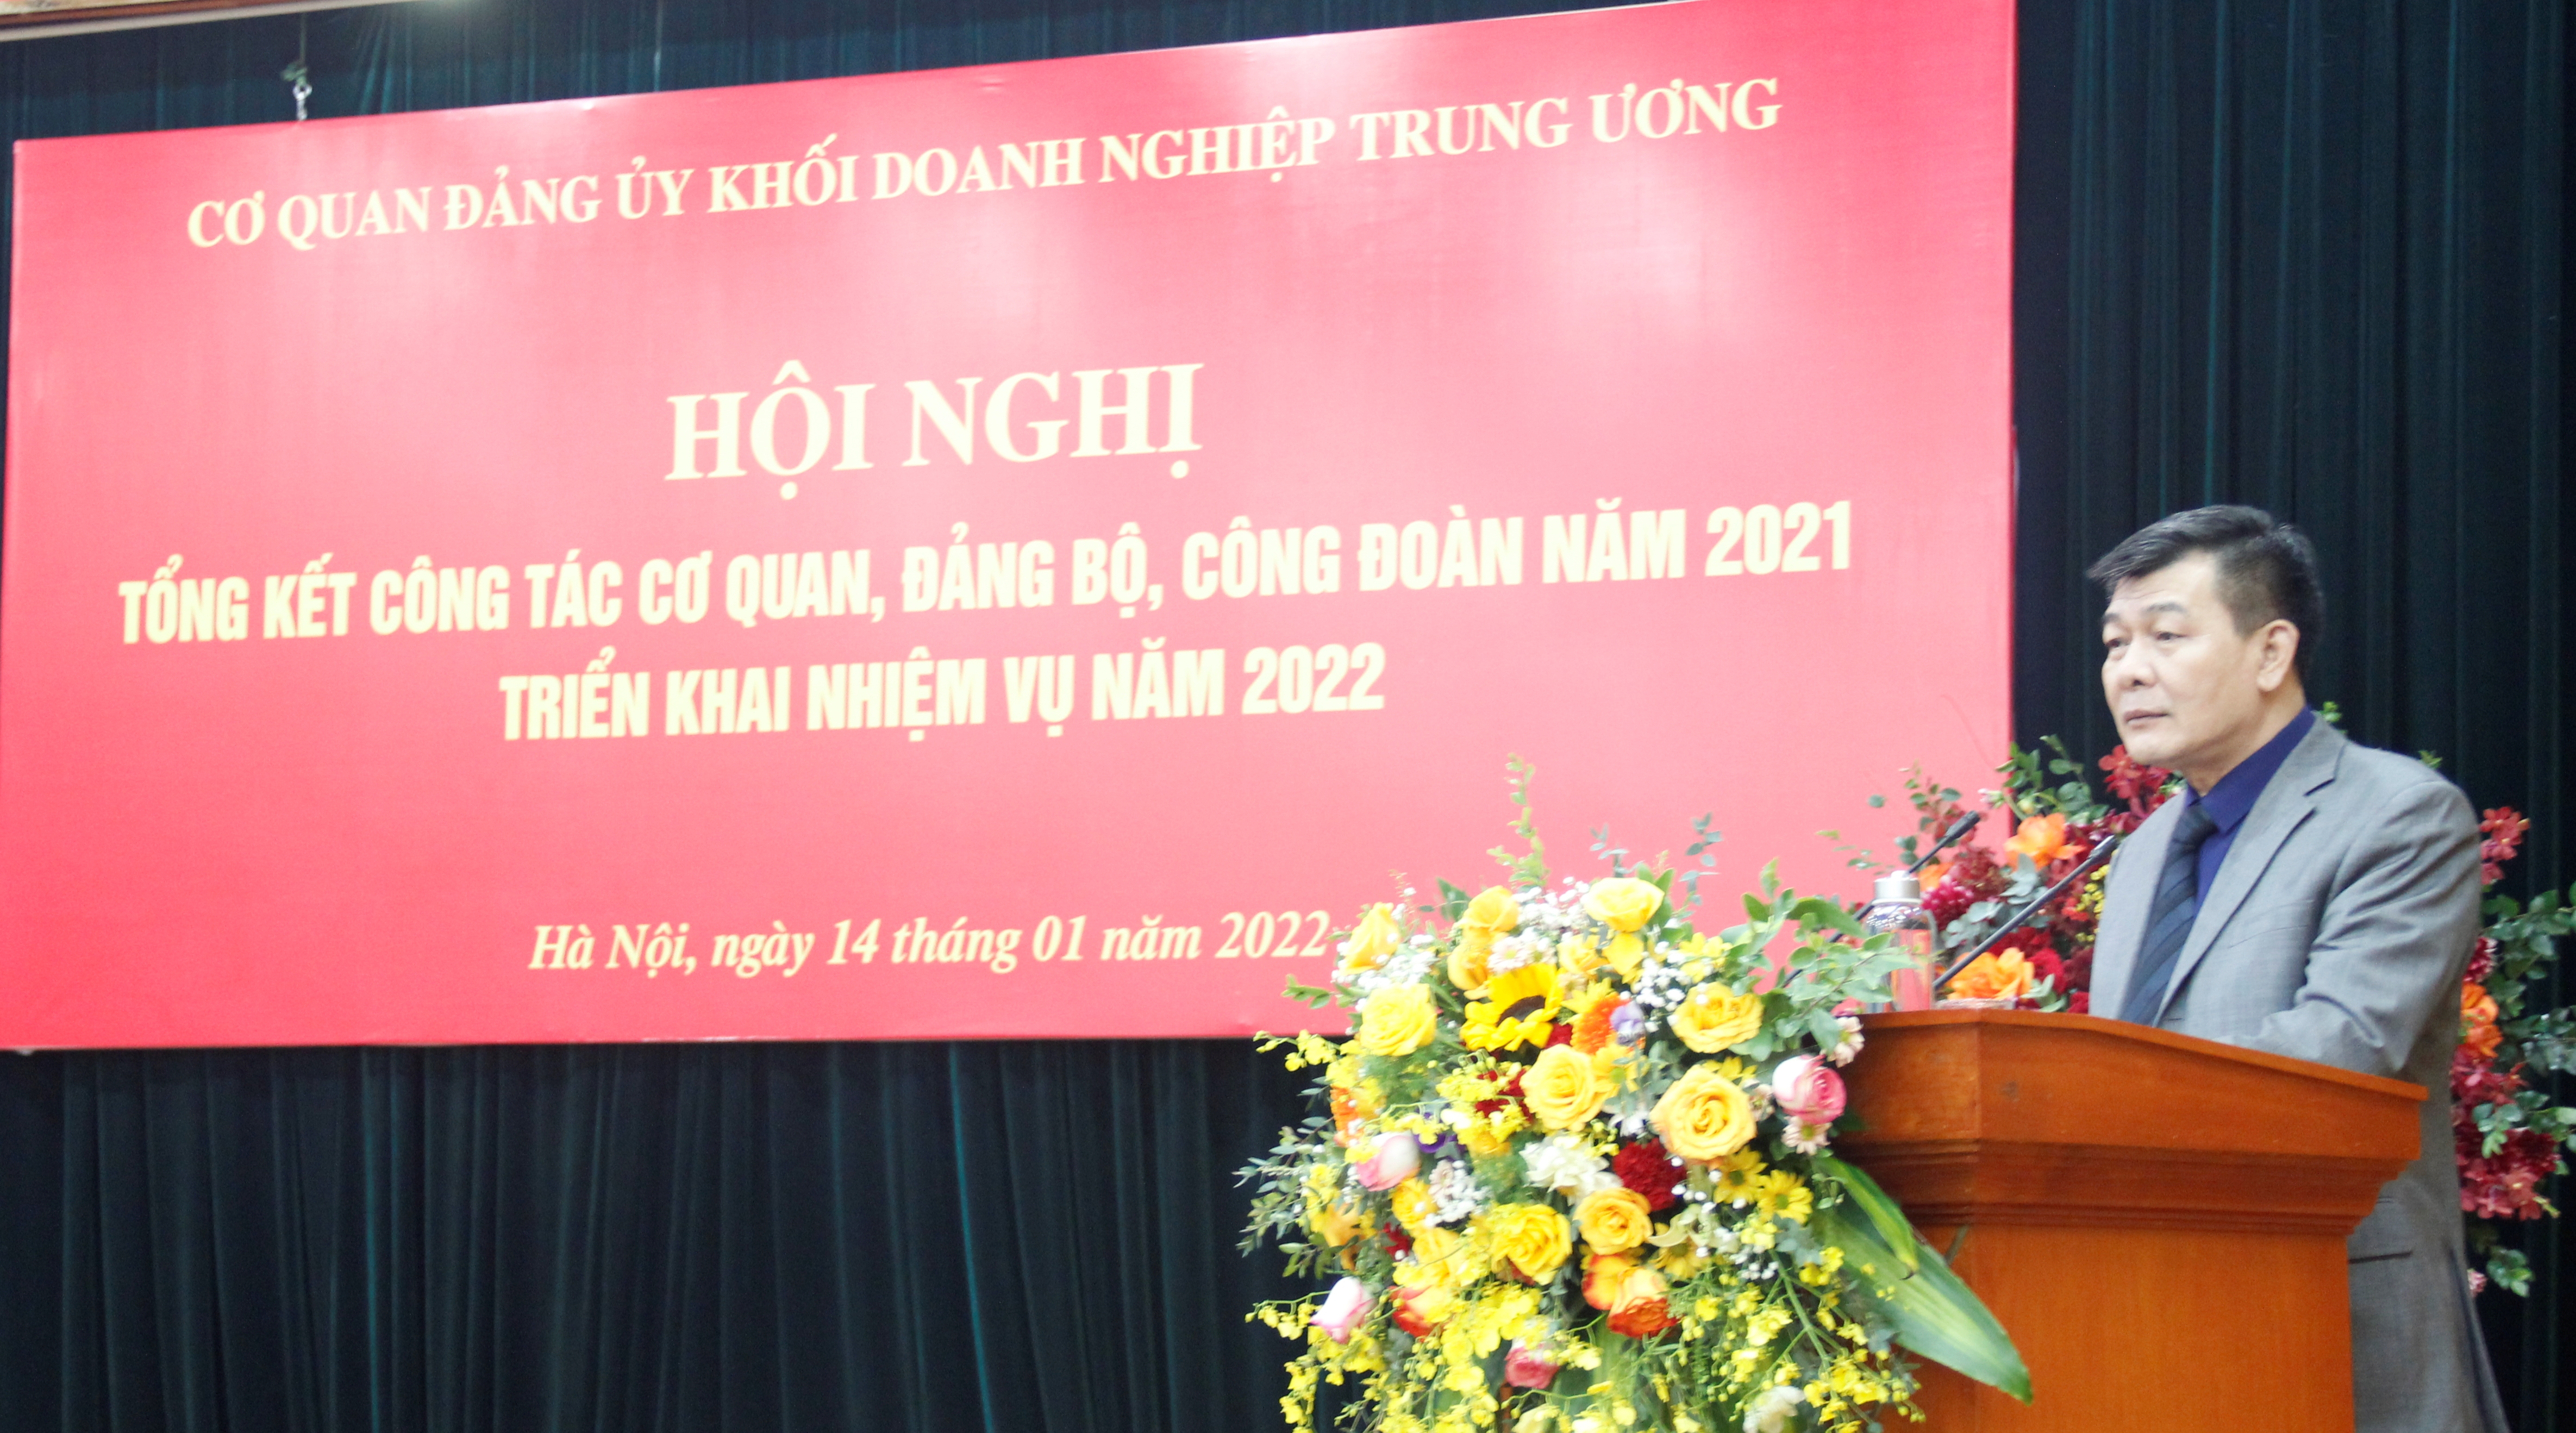 Đồng chí Nguyễn Đức Phong - Phó Bí thư Thường trực Đảng ủy Khối  phát động thi đua năm 2022